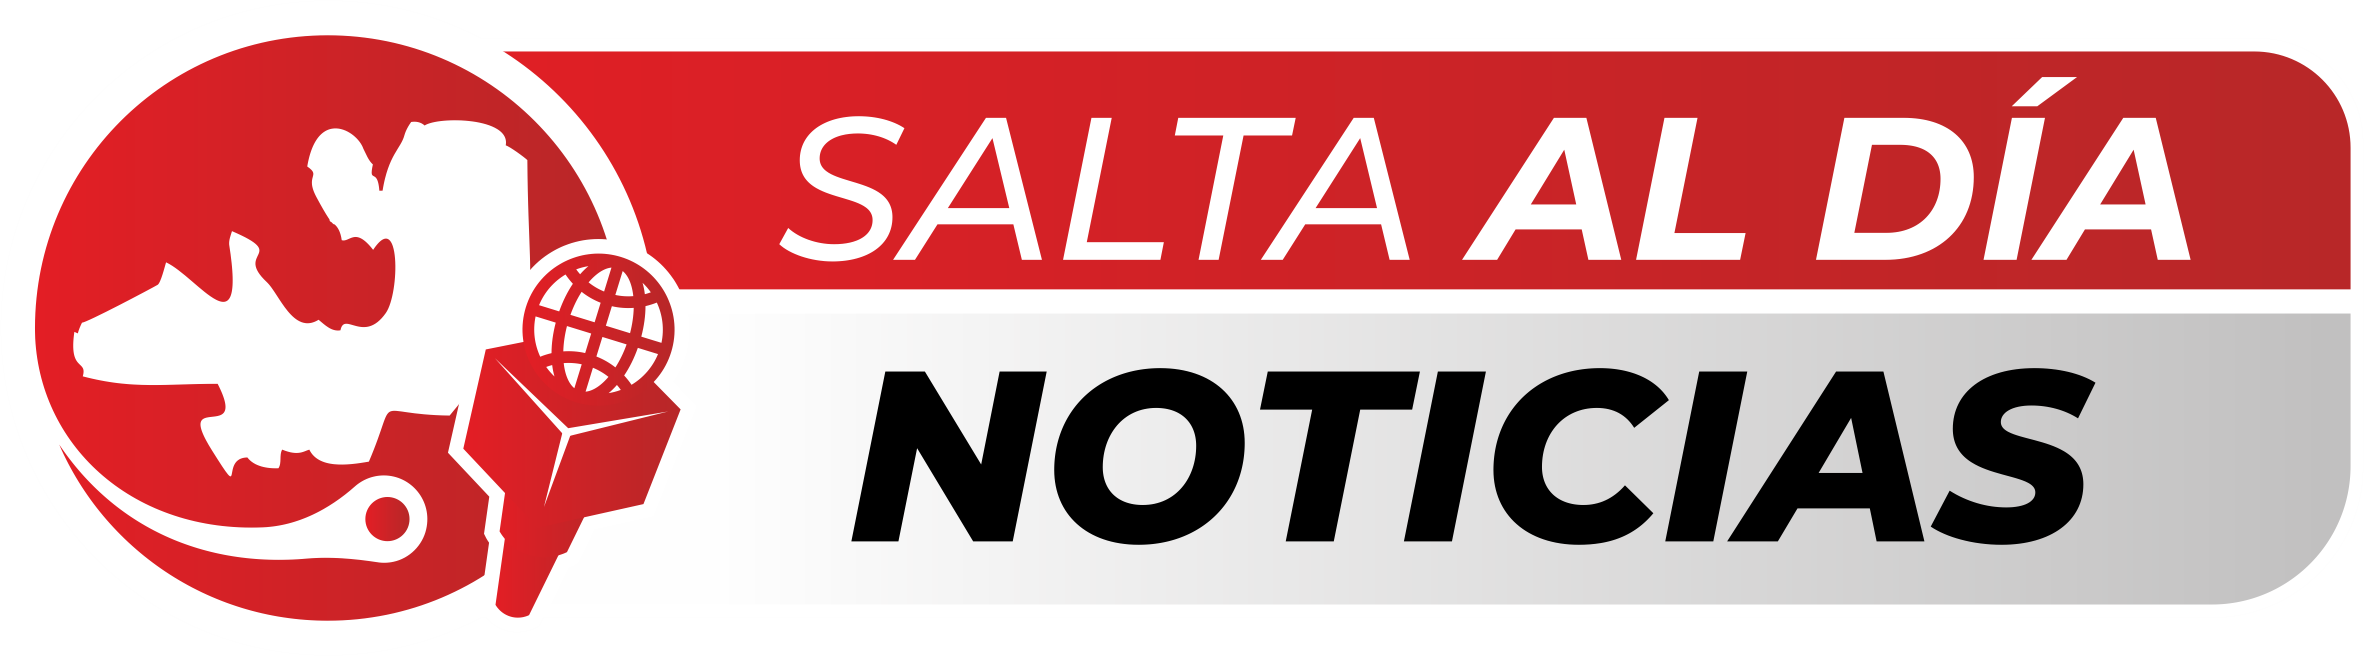 saltaaldianoticias.com.ar